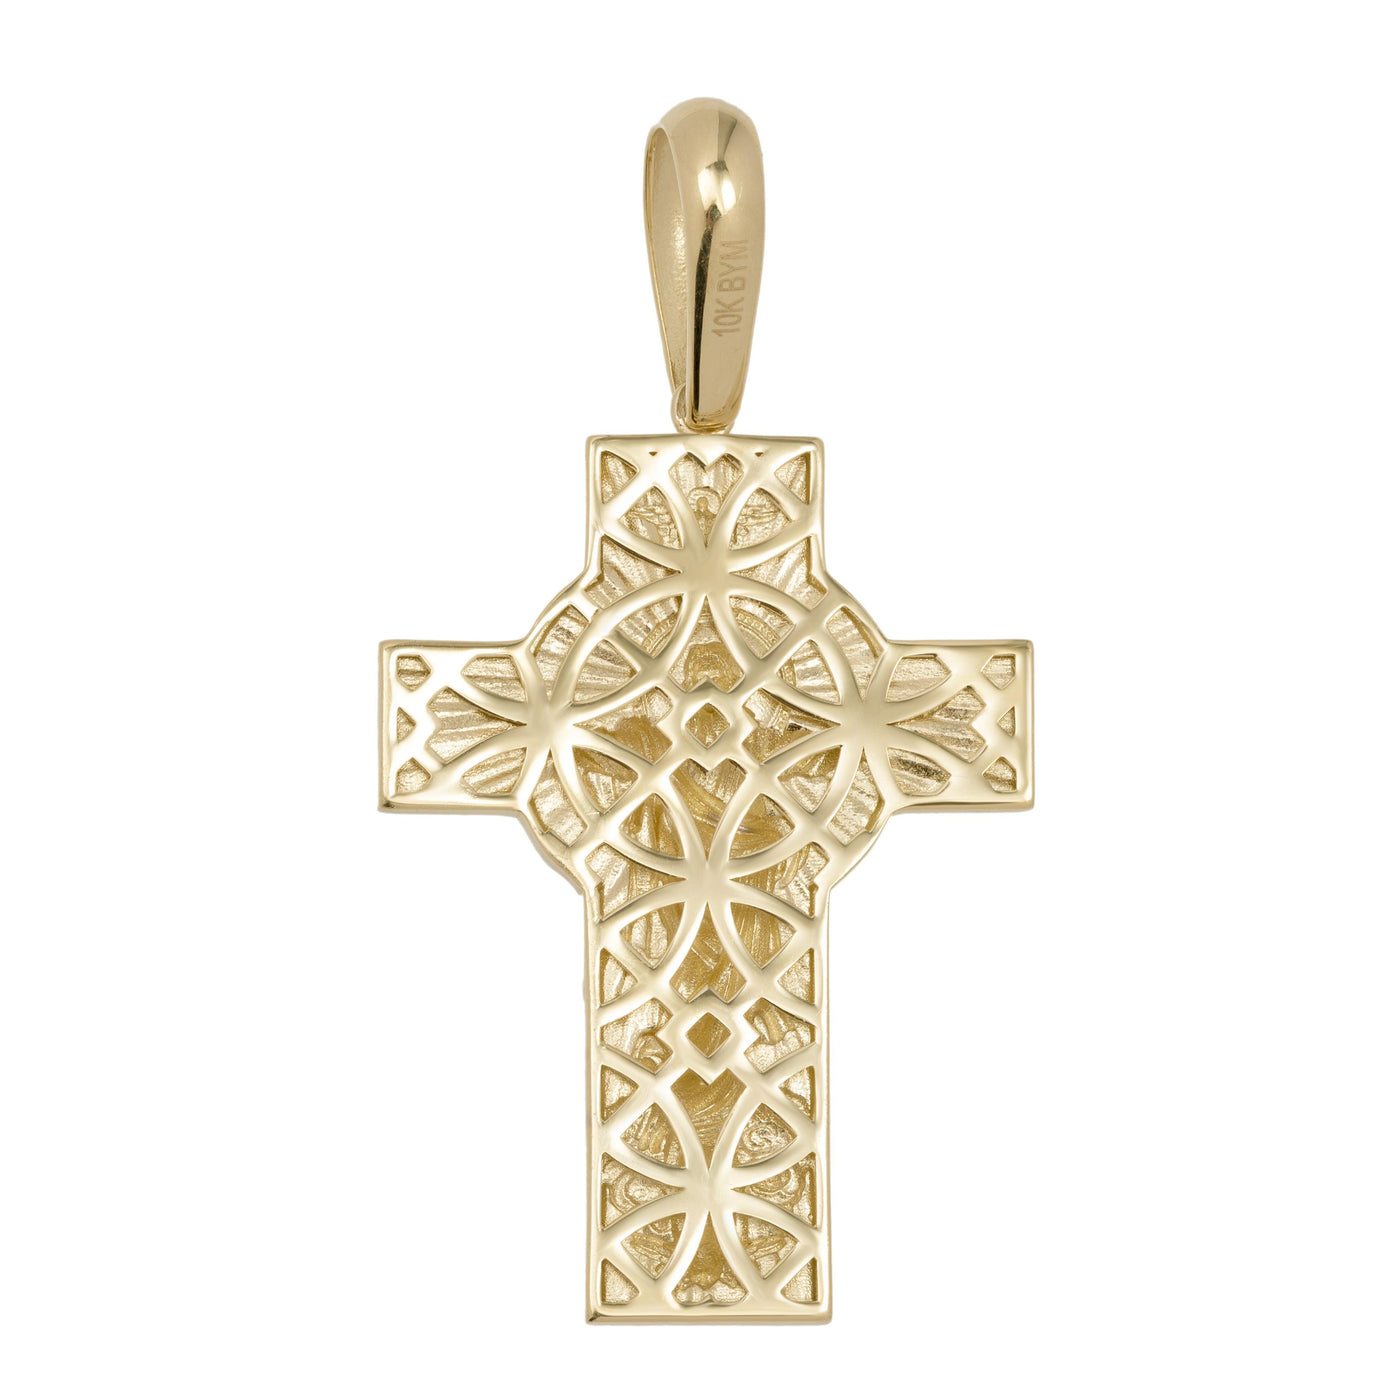 Textured Crucifix Jesus Cross Pendant Solid 10K Yellow Gold - bayamjewelry